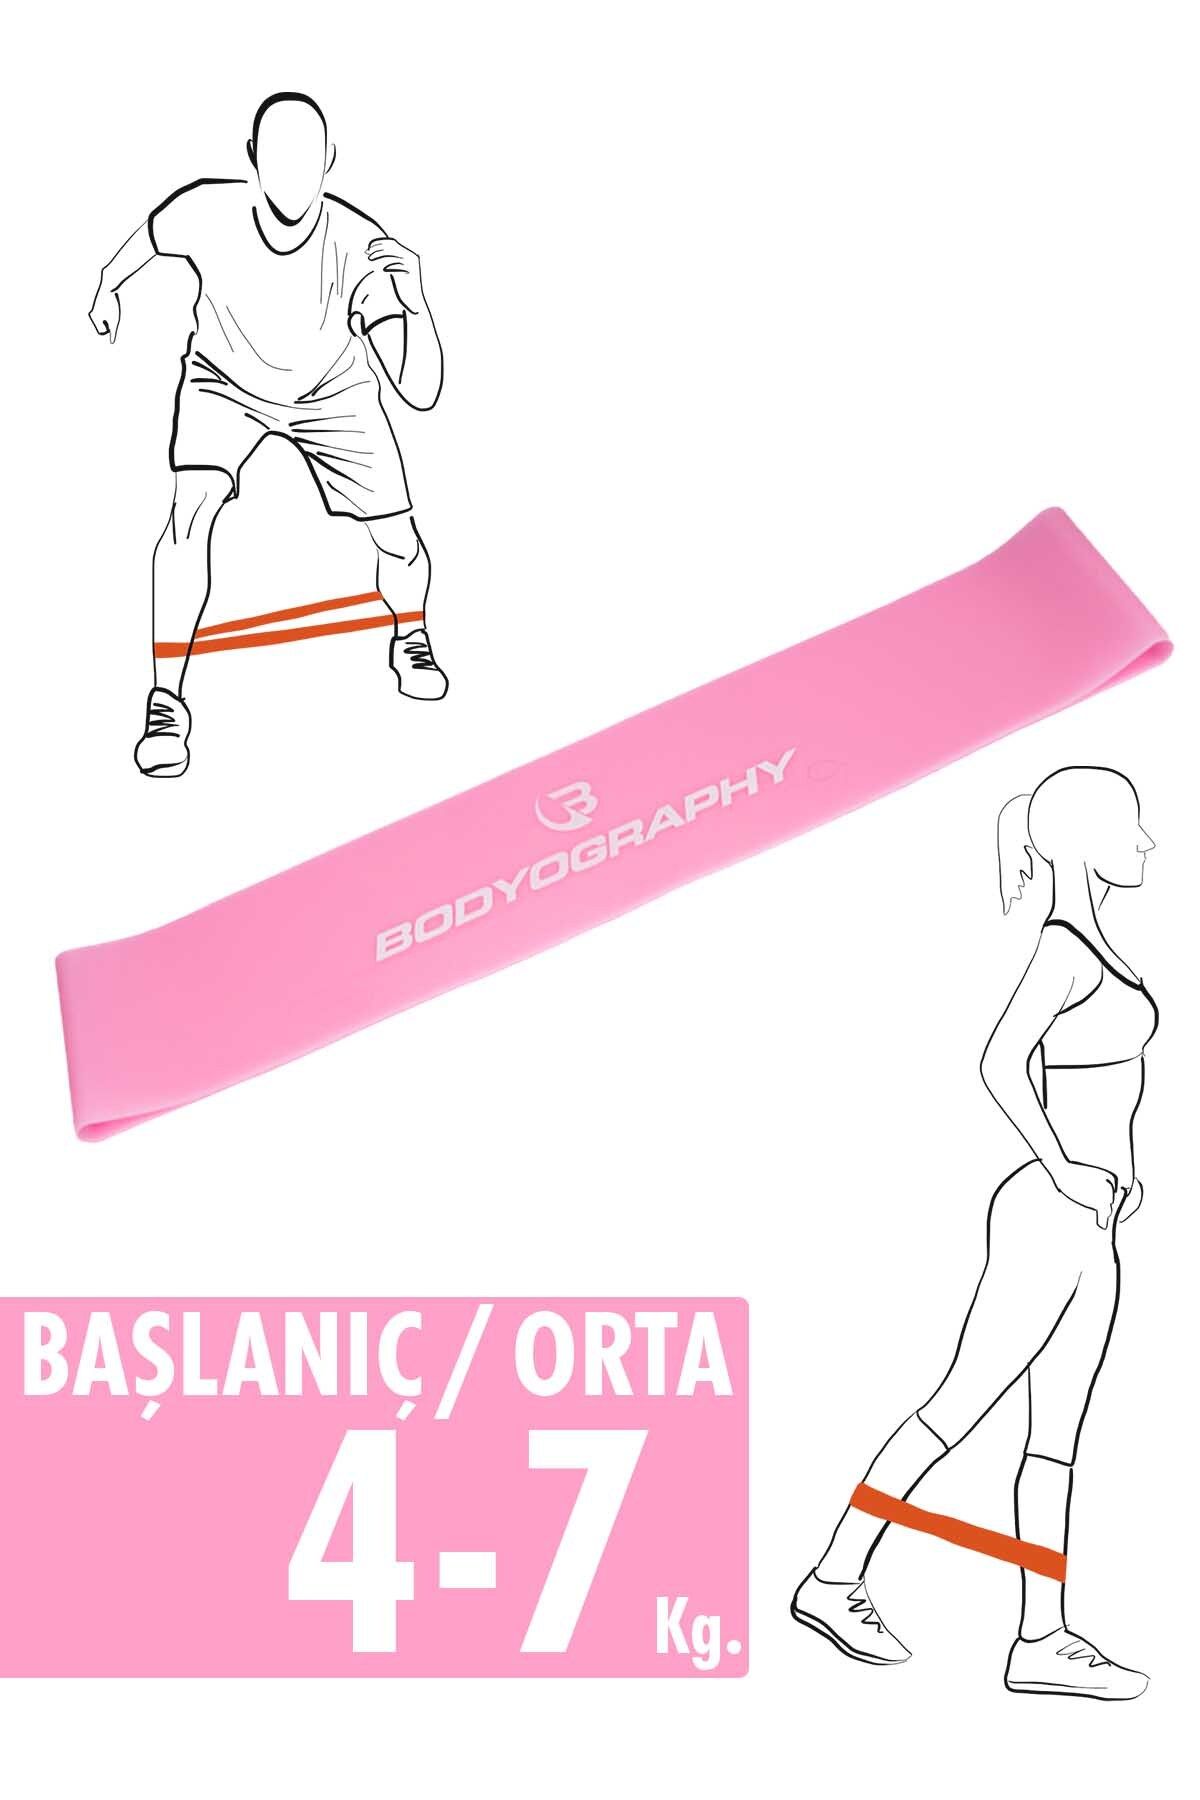 Bodyography Ultra Dayanıklı Silikon Mini Halka Egzersiz Direnç Bantı Pilates Lastiği Başlangıç / Orta Seviye